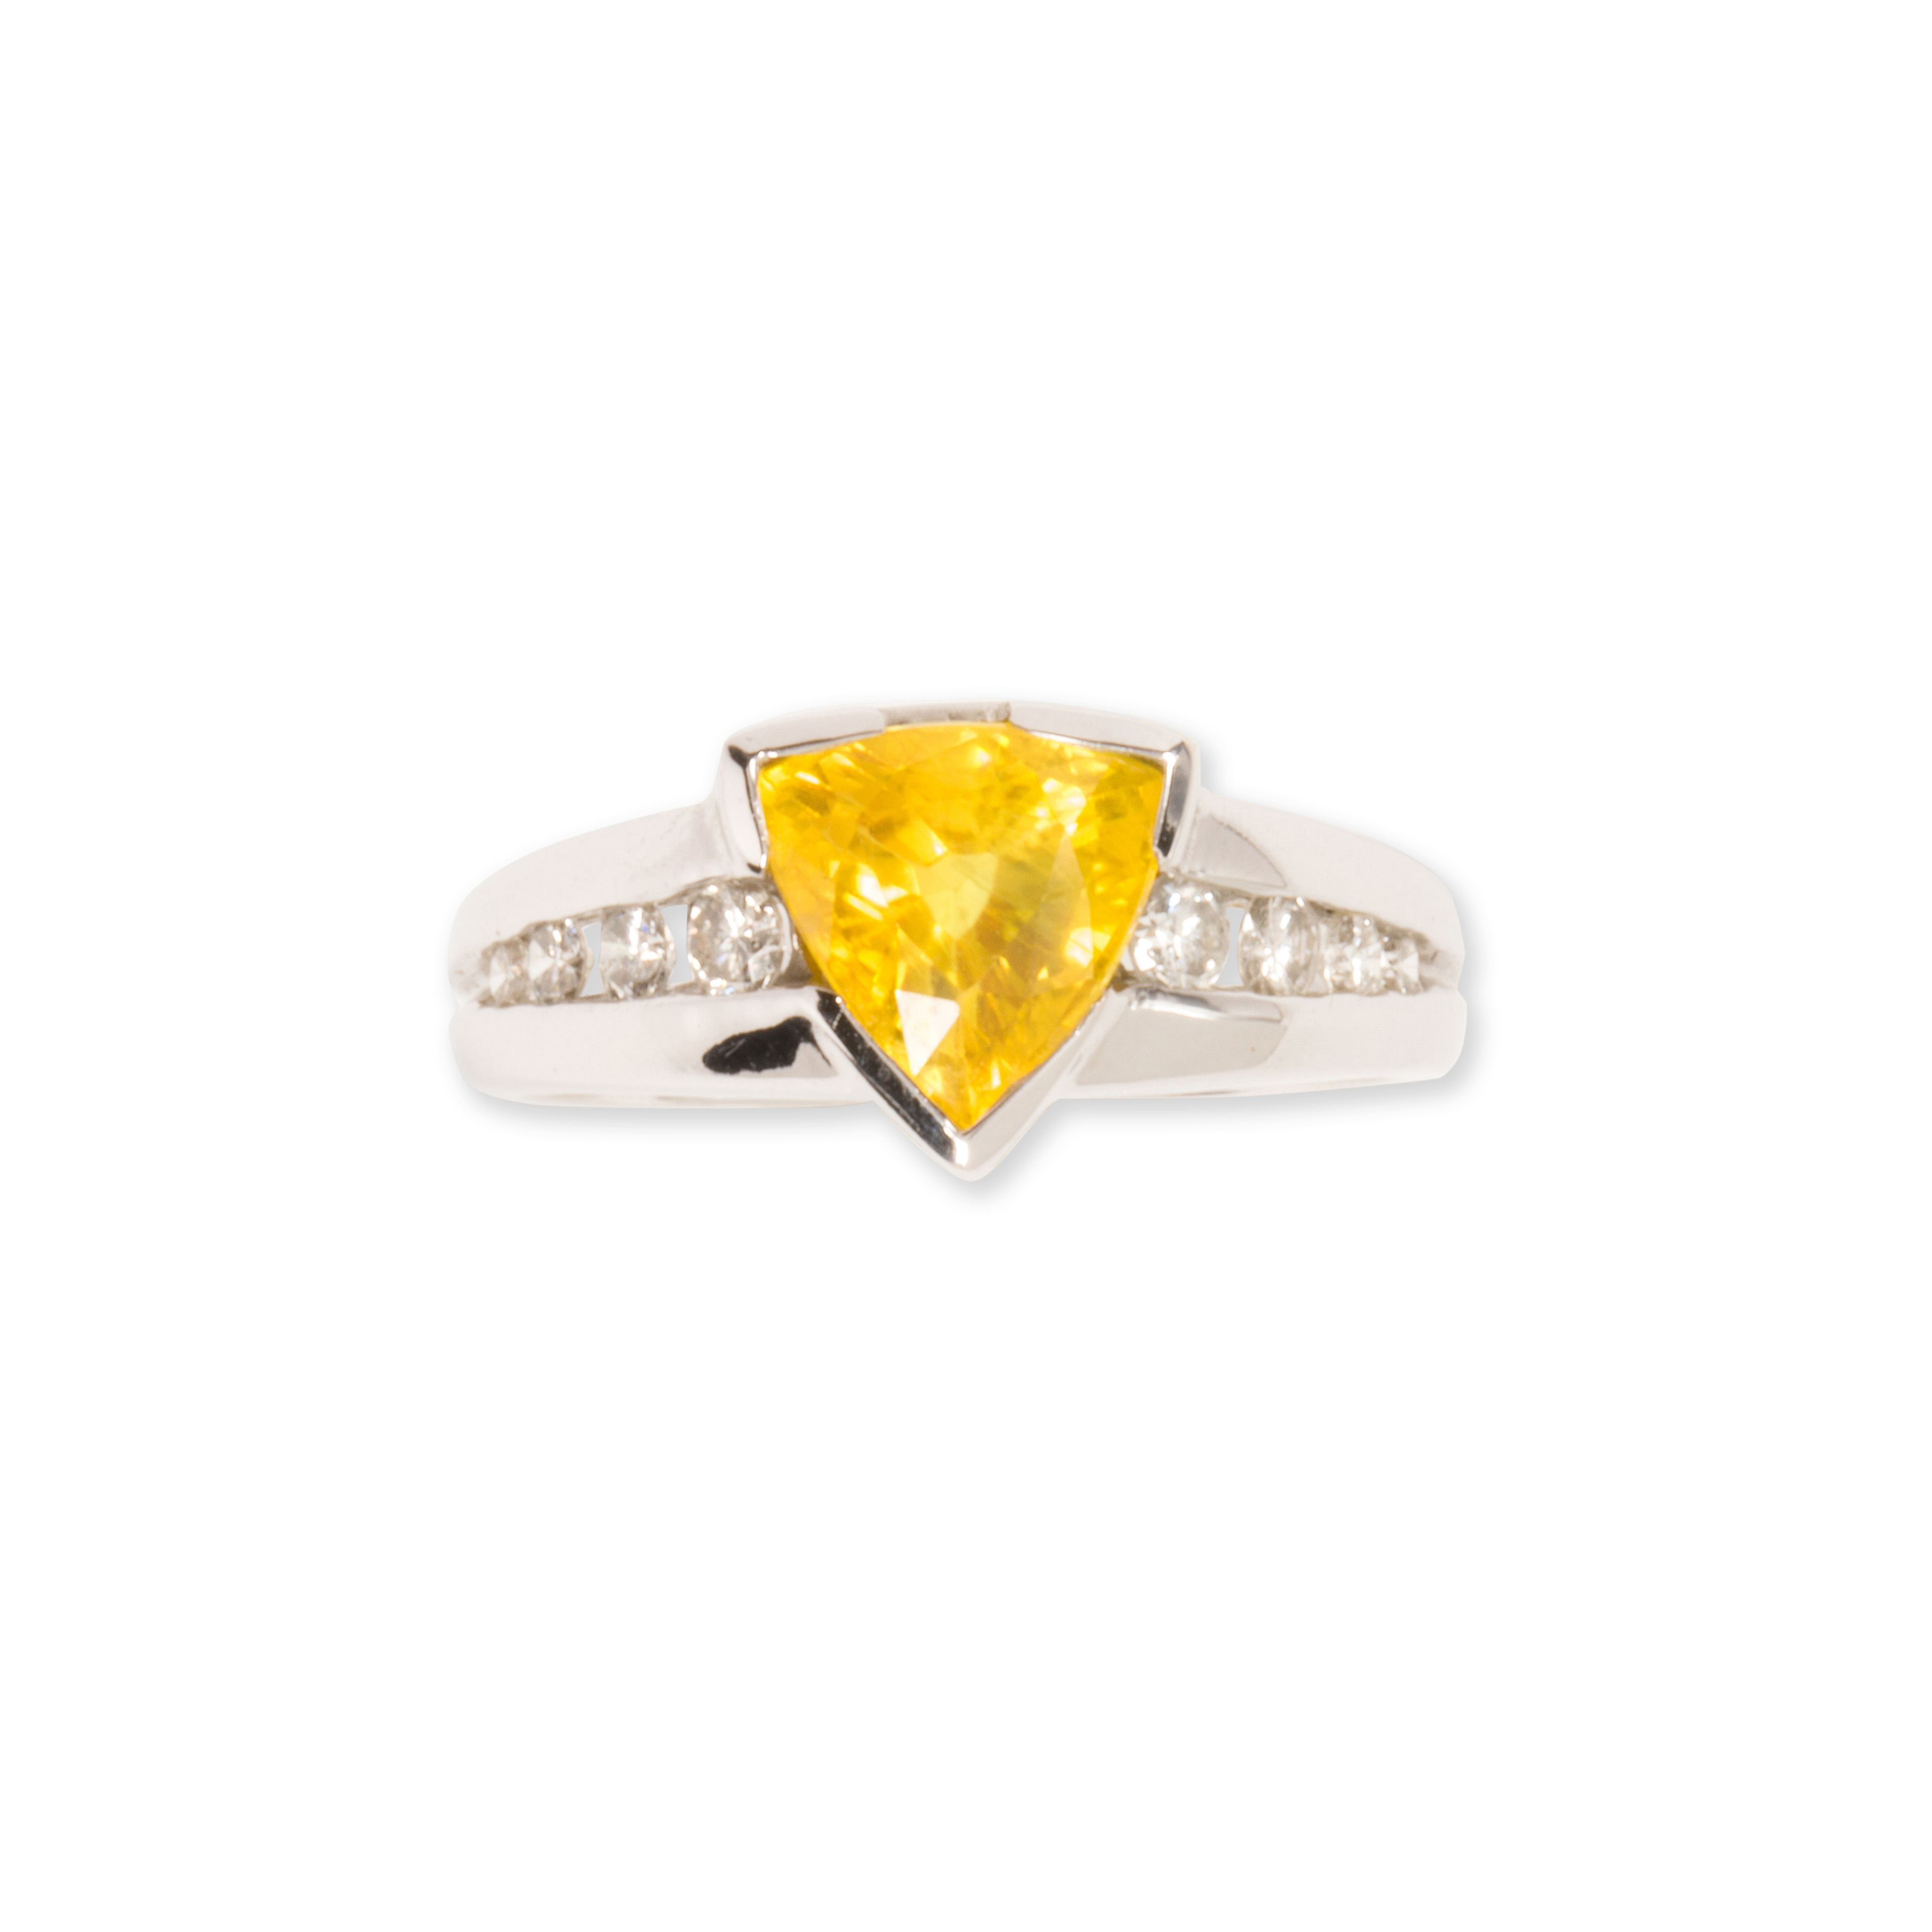 A YELLOW SAPPHIRE DIAMOND AND 3a541e